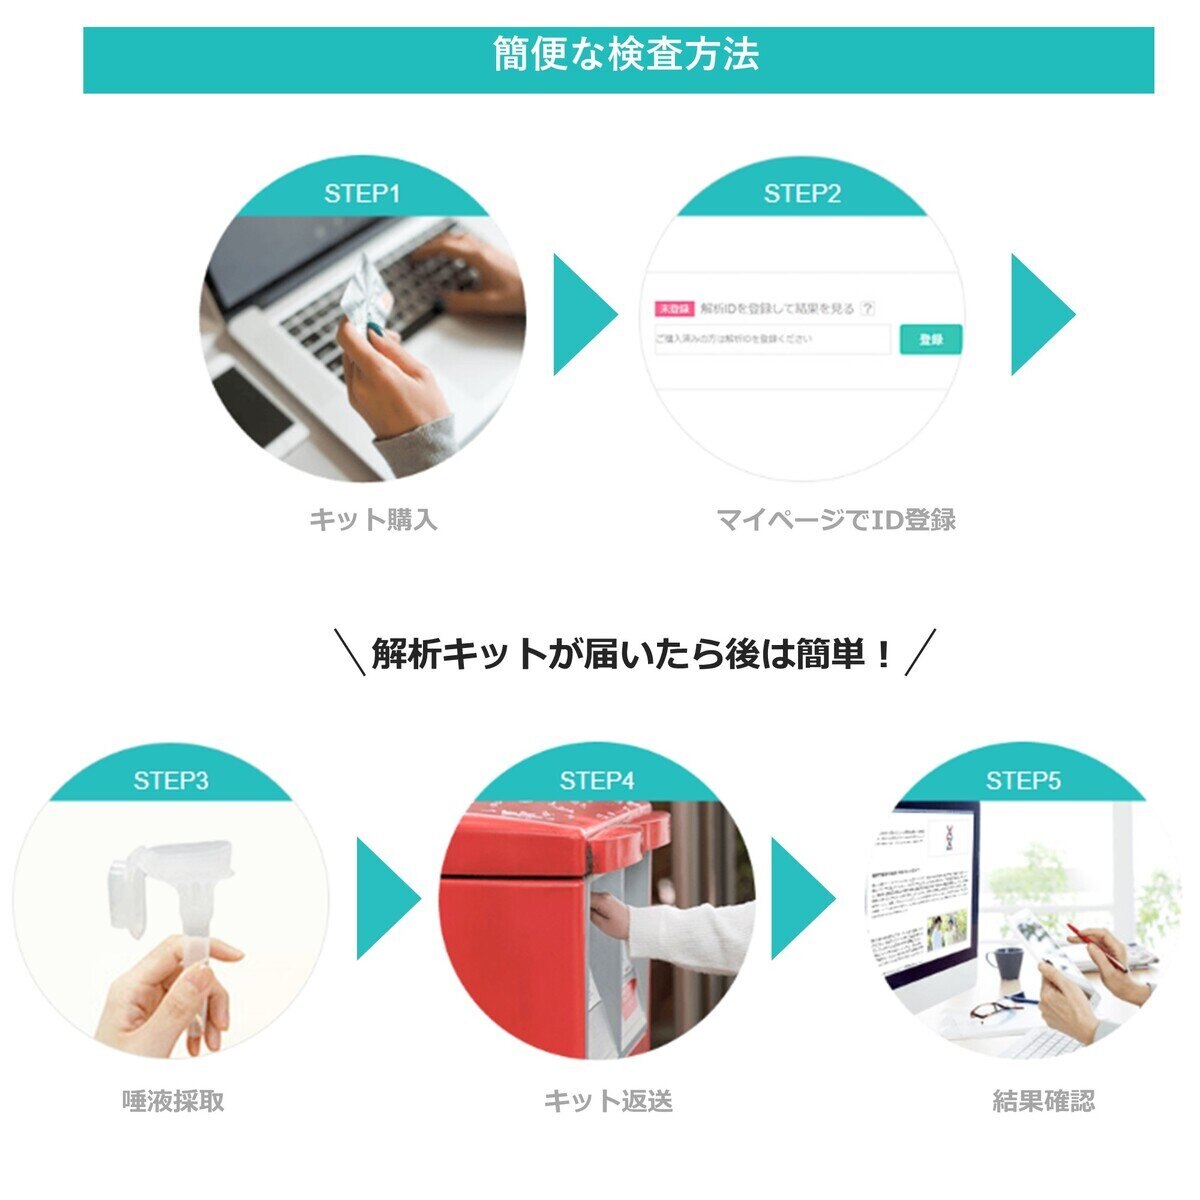 ユーグレナ マイヘルス 遺伝子解析サービス | Costco Japan